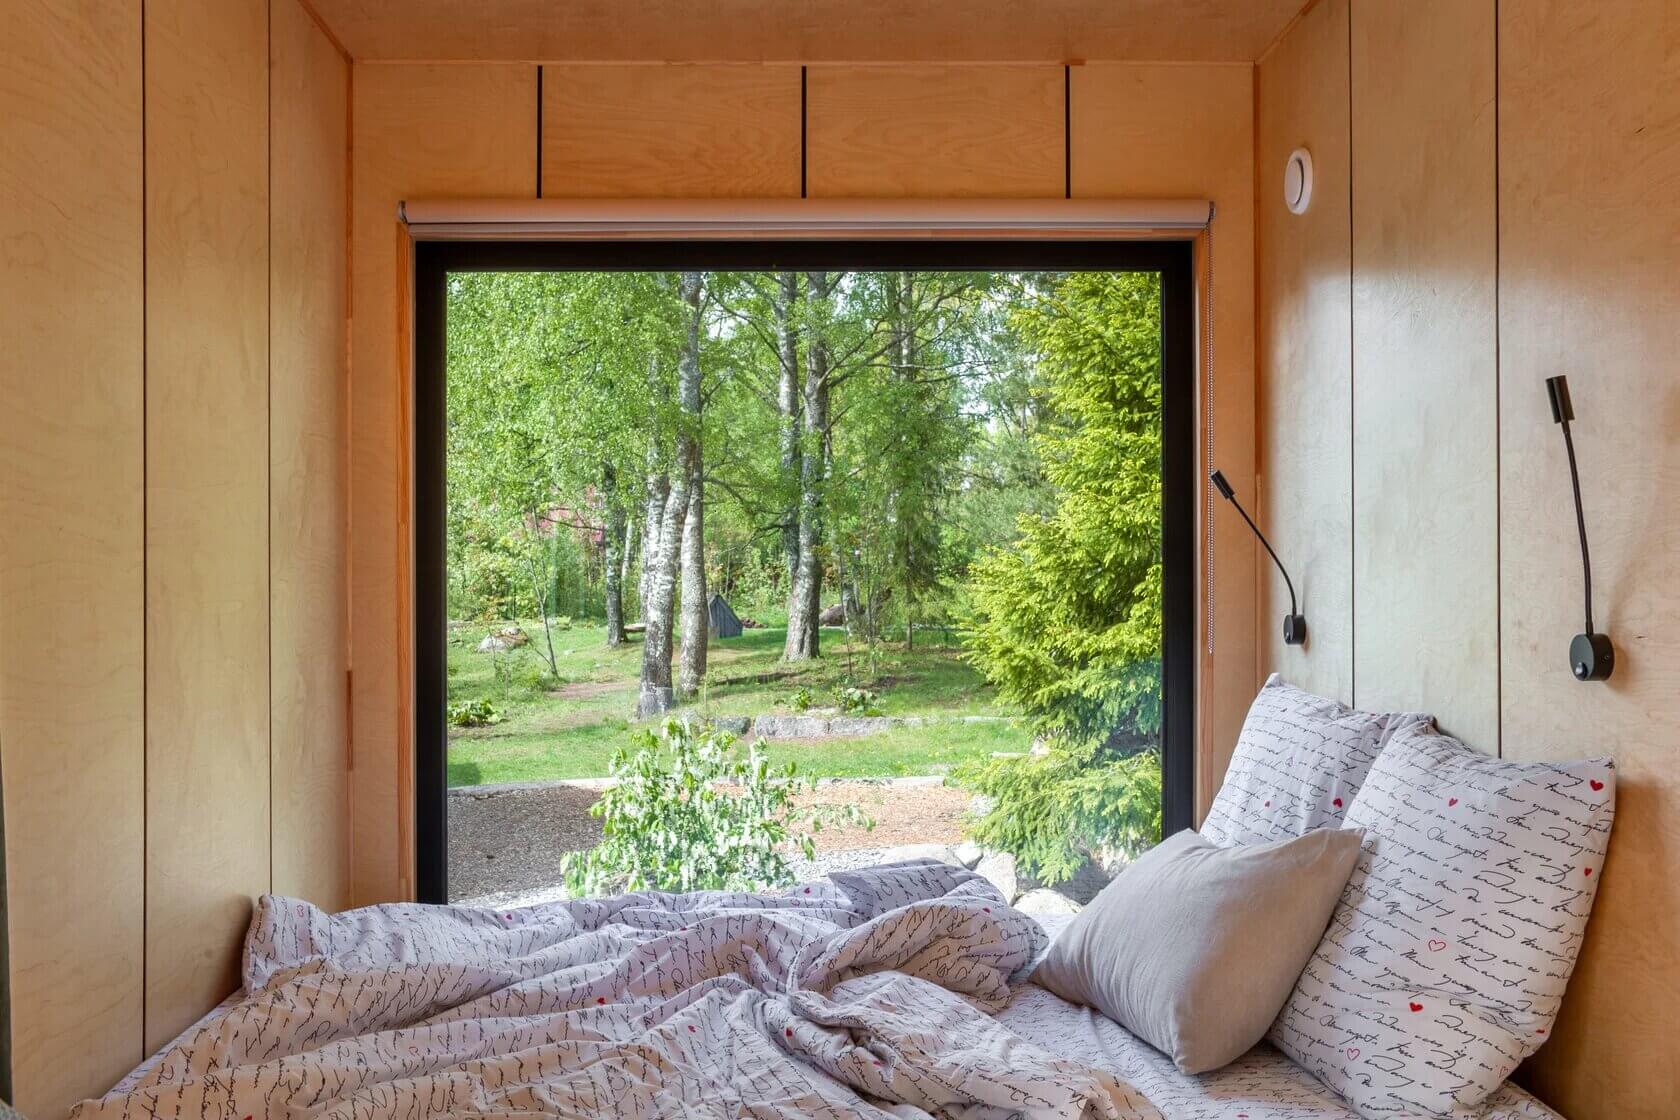 Спальное место оборудовано рядом с большим панорамным окном.